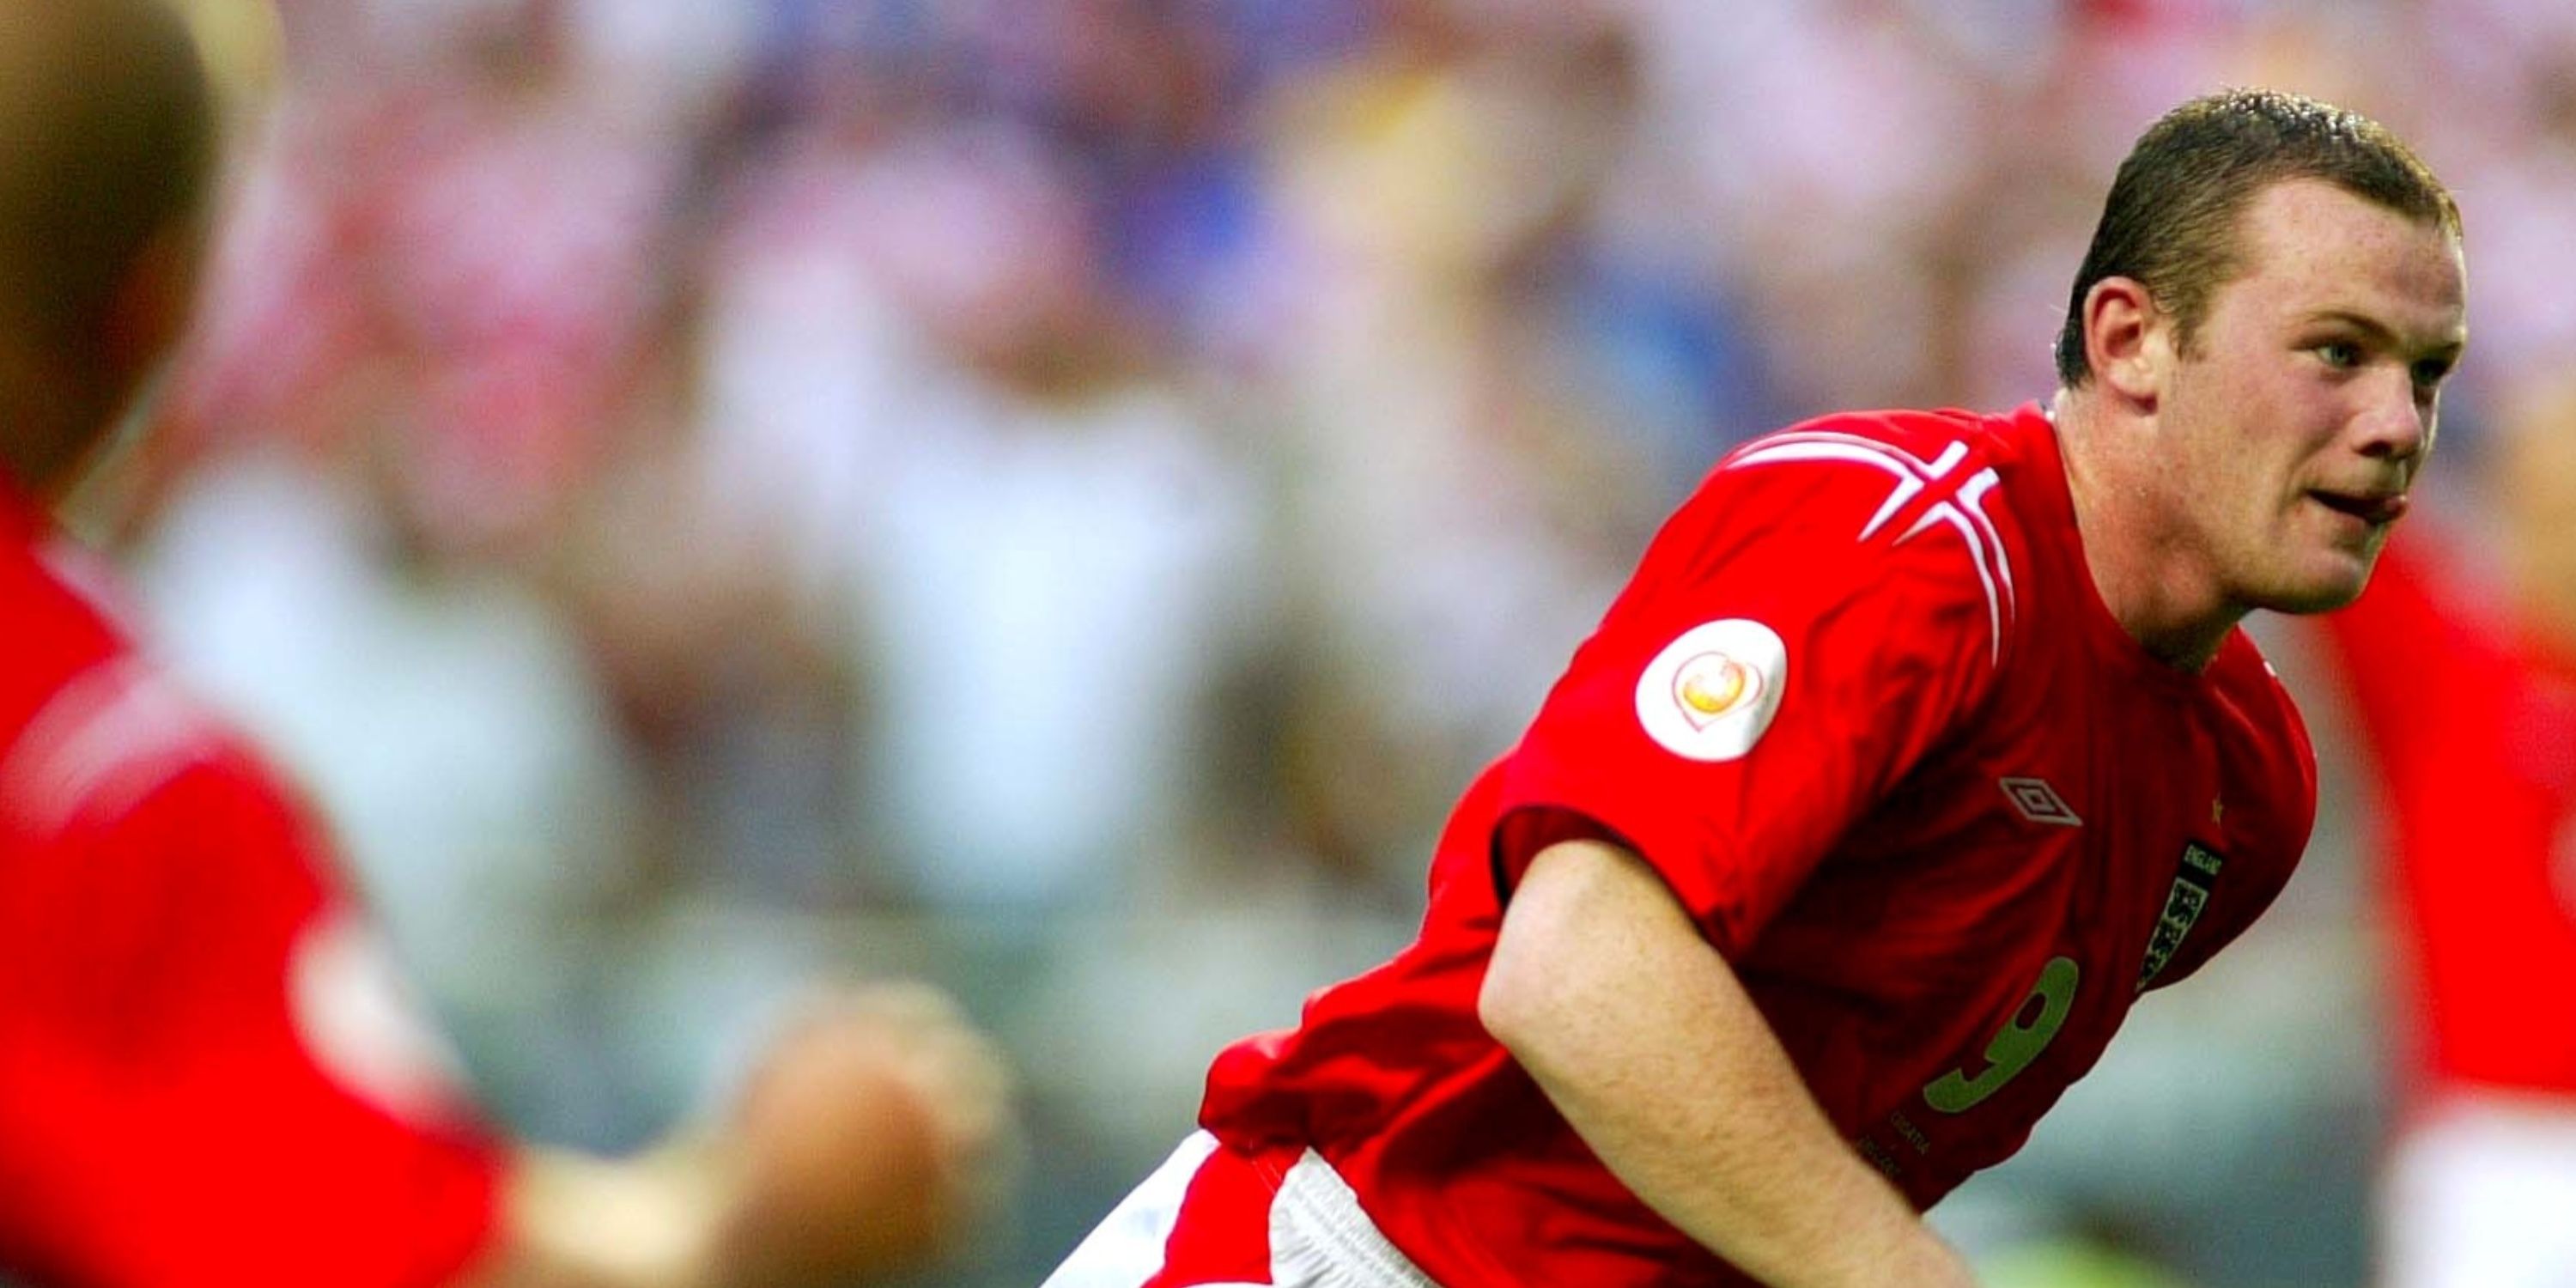 Wayne Rooney strikes against Croatia